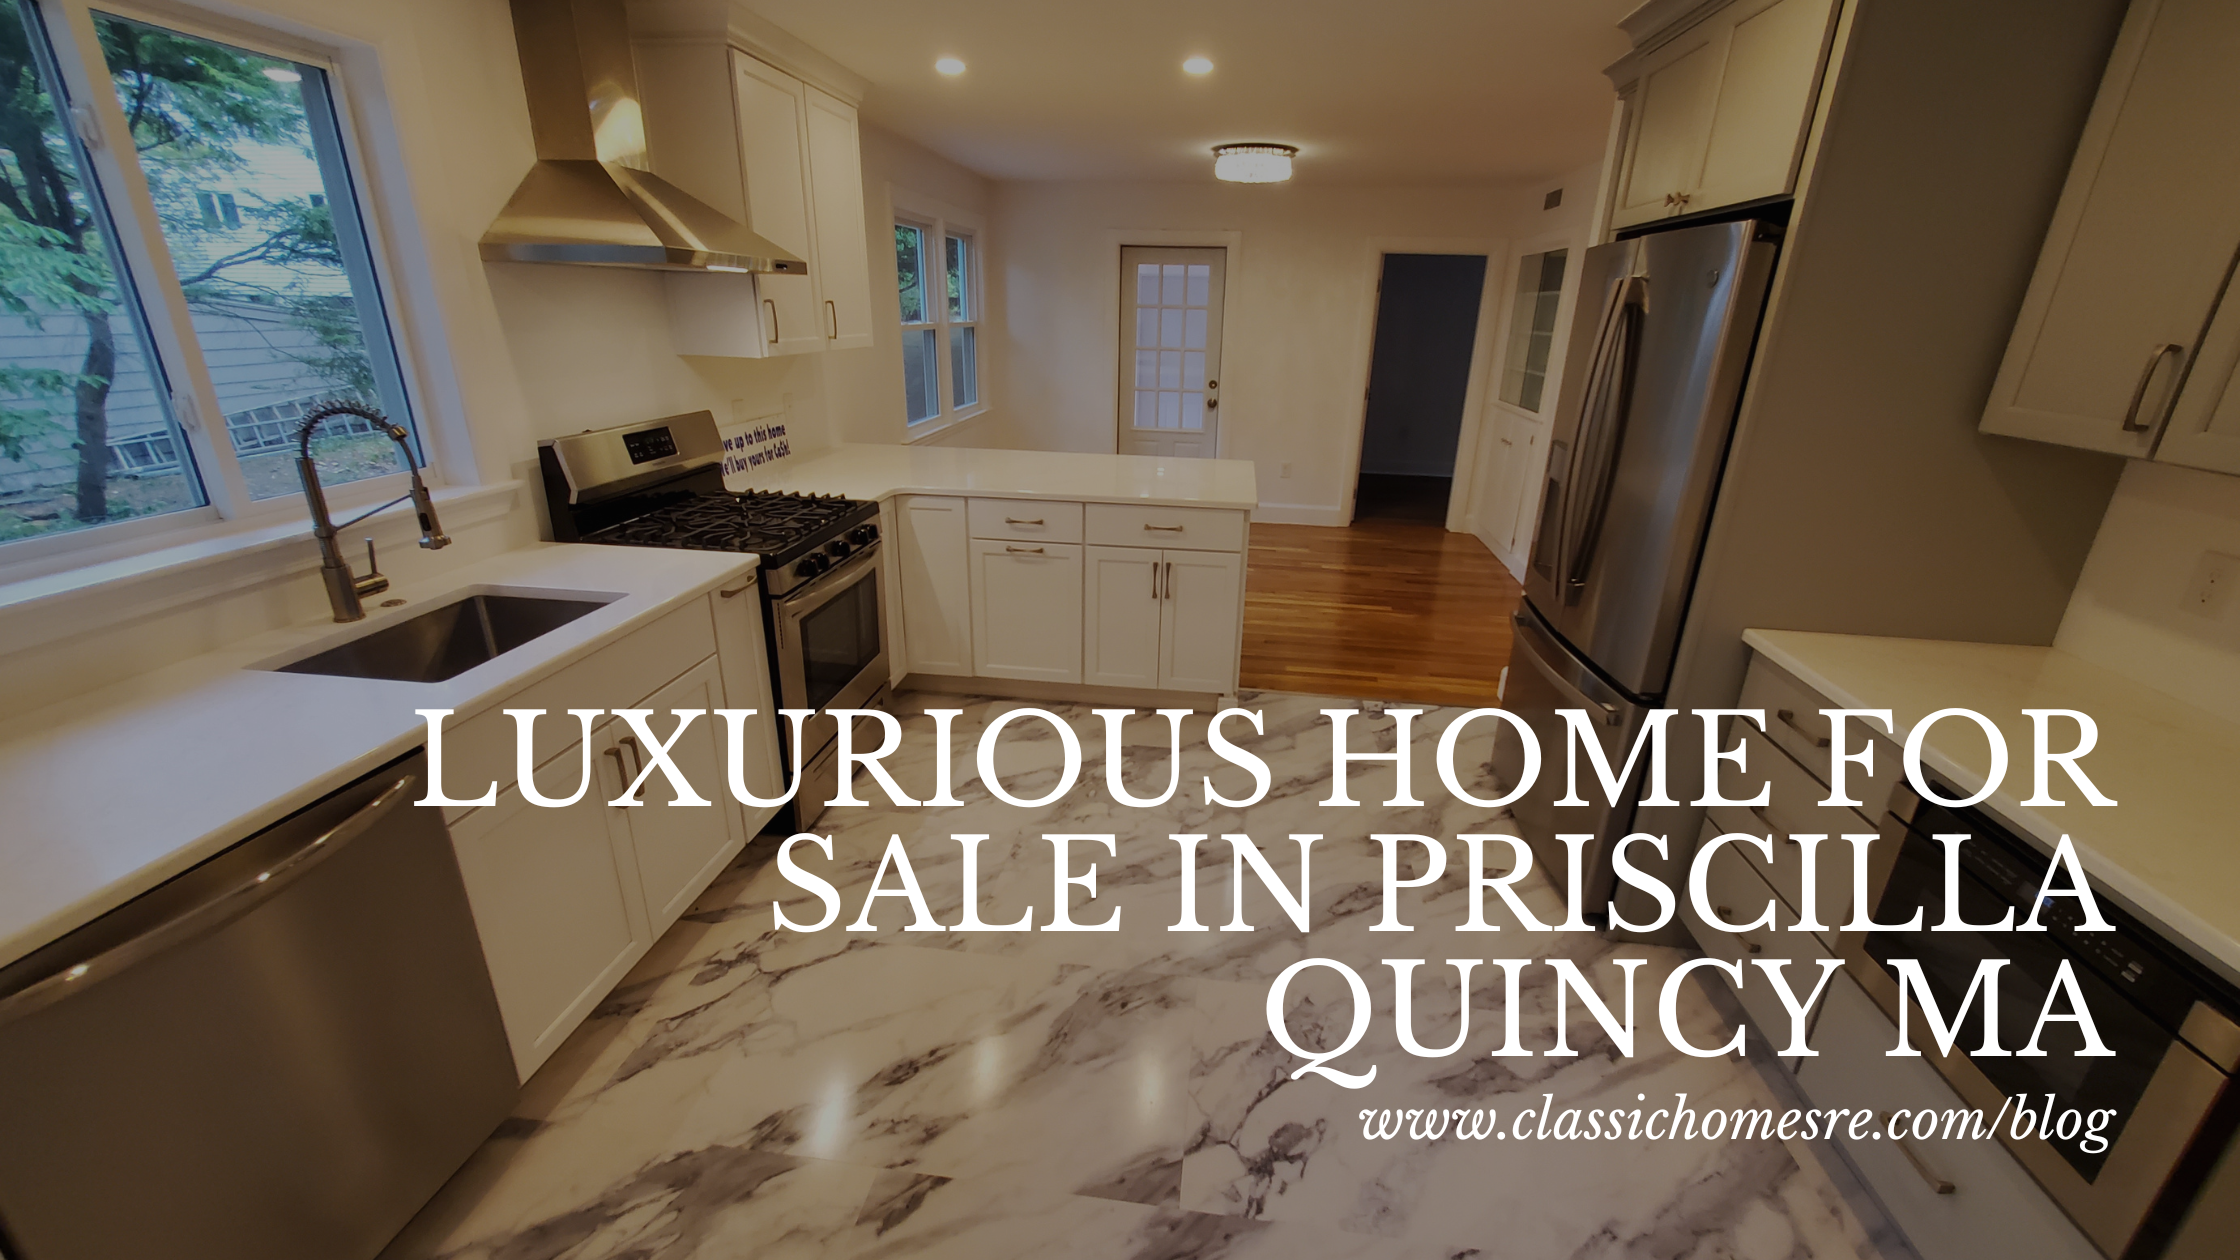 Luxury Home For Sale In Priscilla Quincy MA!